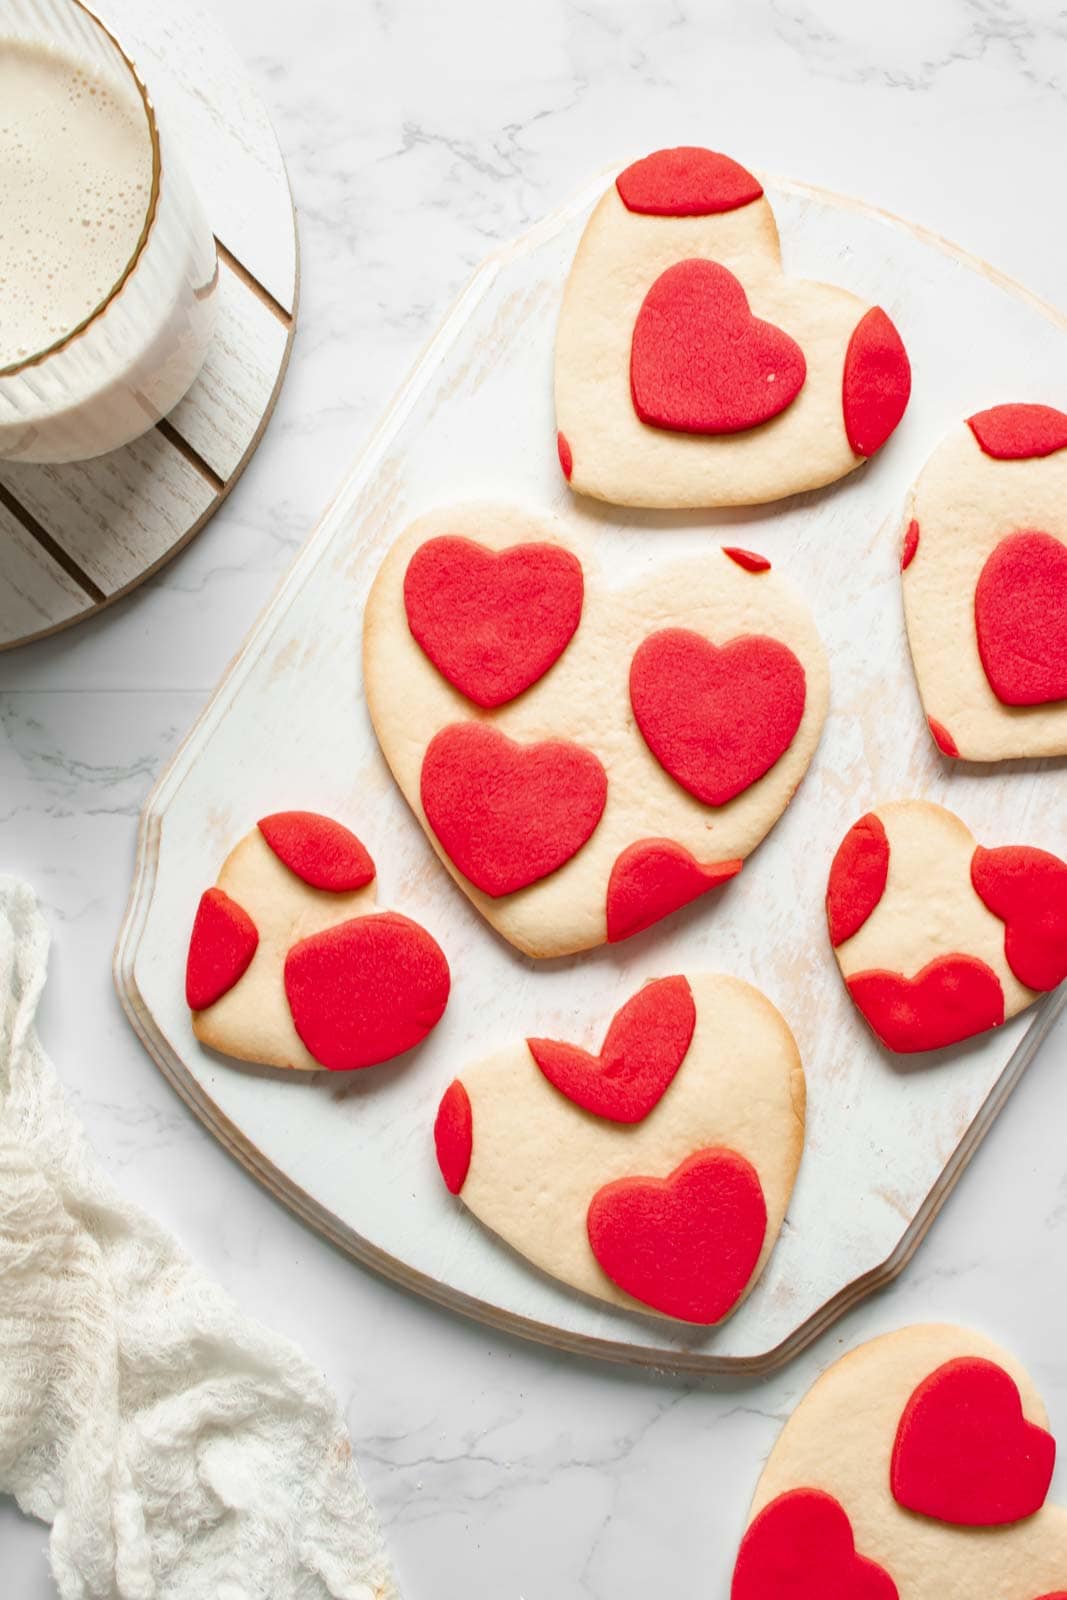 galletas en forma de corazon